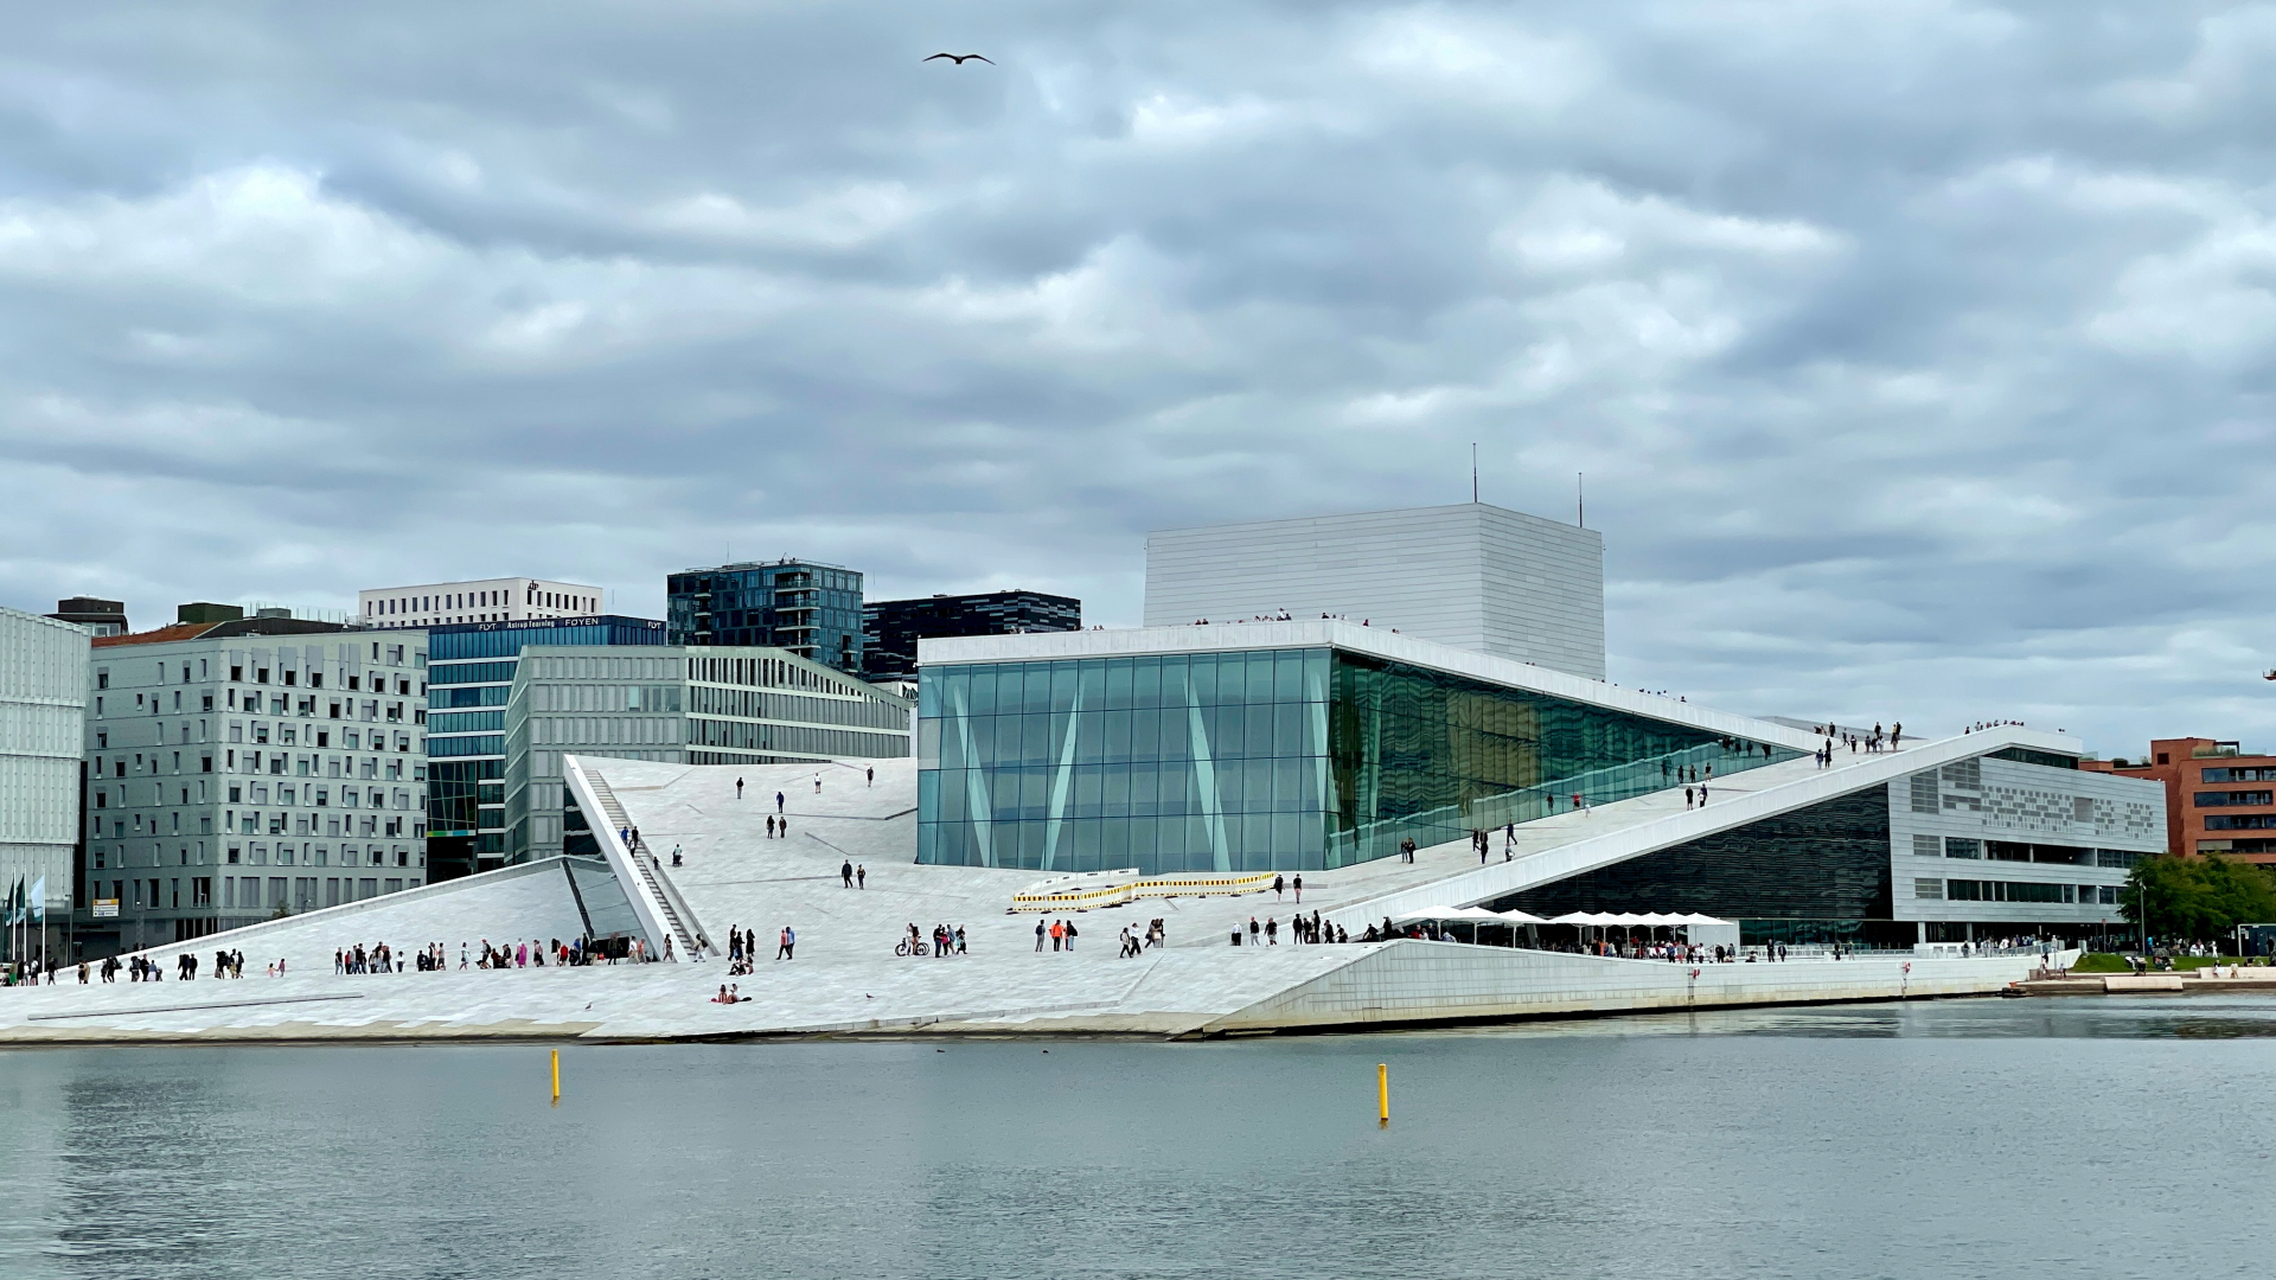 奥斯陆歌剧院,非常特别的建筑,全世界独一无二,来挪威奥斯陆一定不能